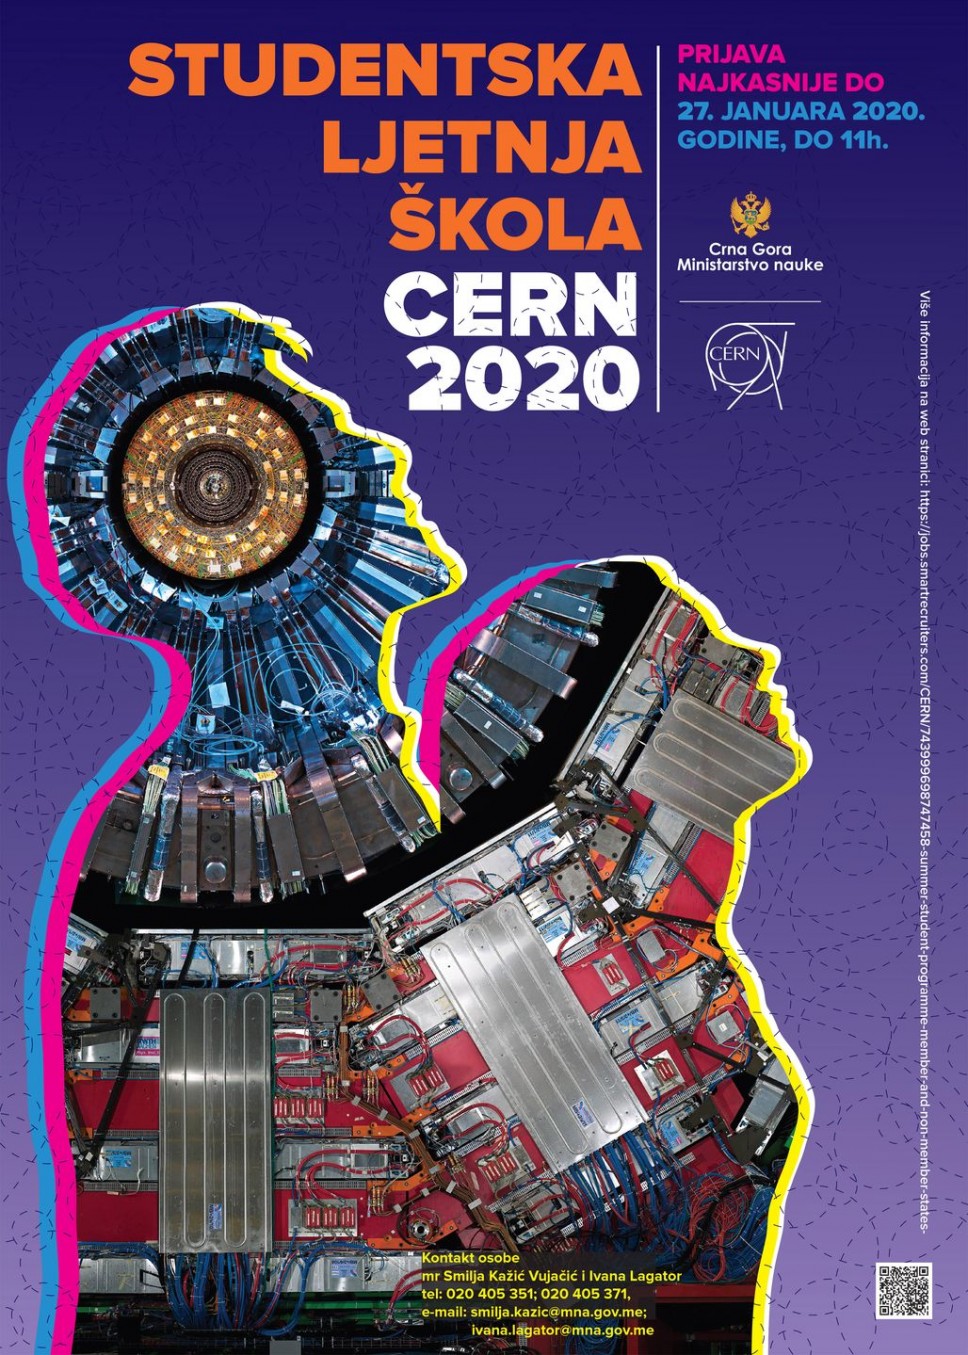 Produžen rok prijave za Studentsku ljetnju školu CERN 2020